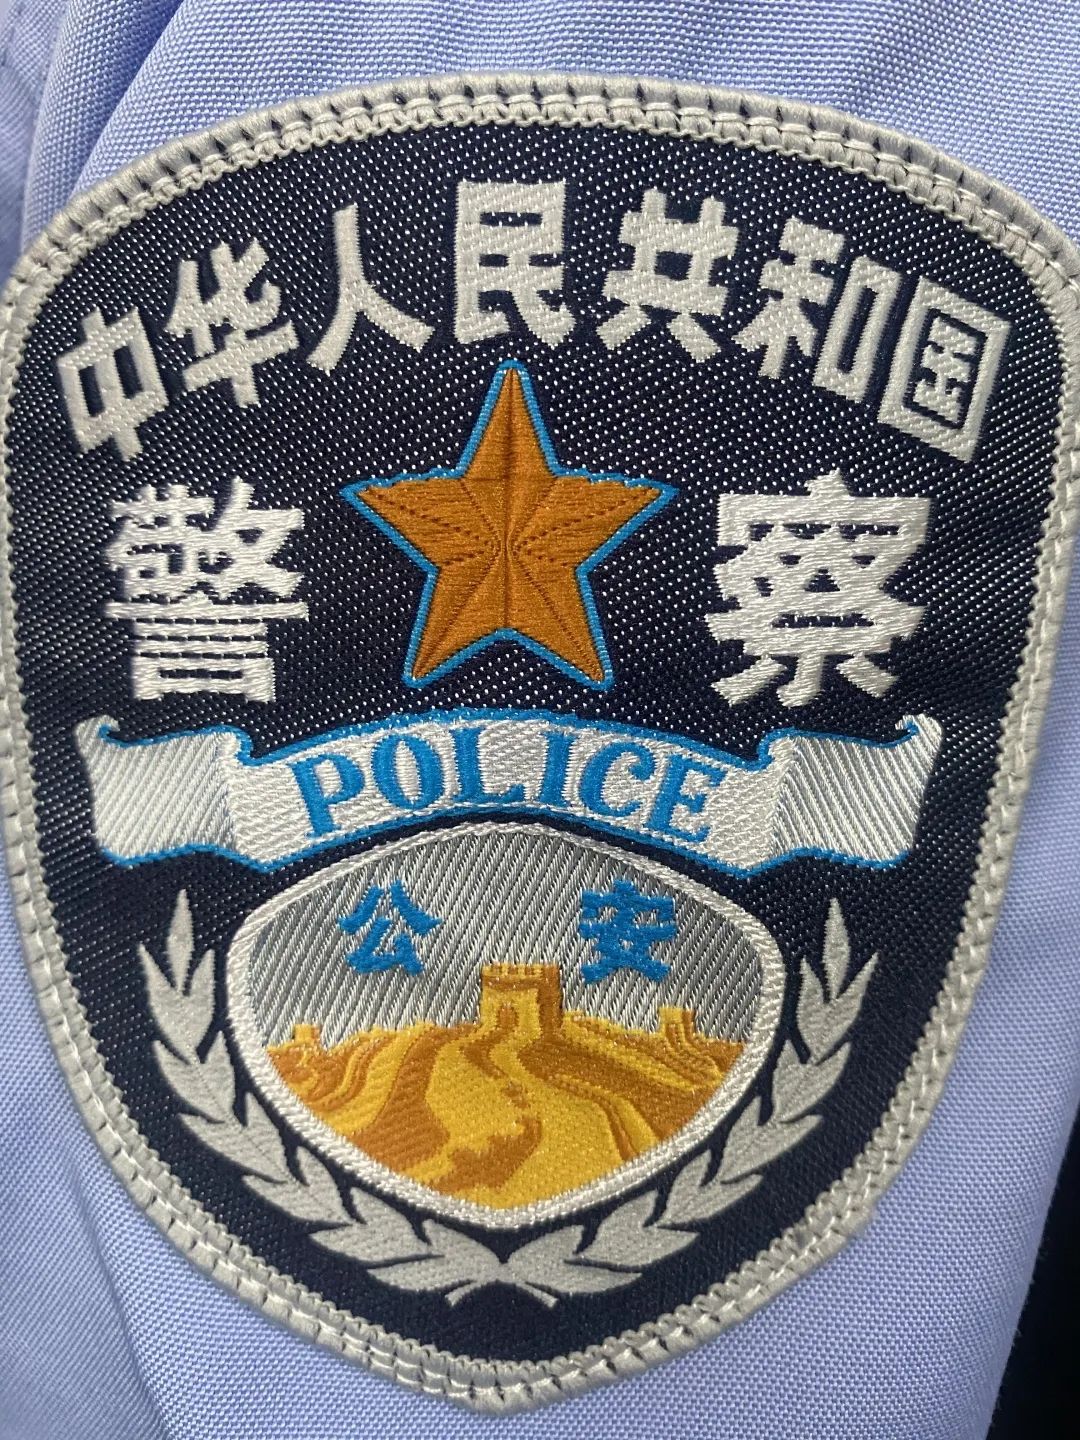 警察胸章图片